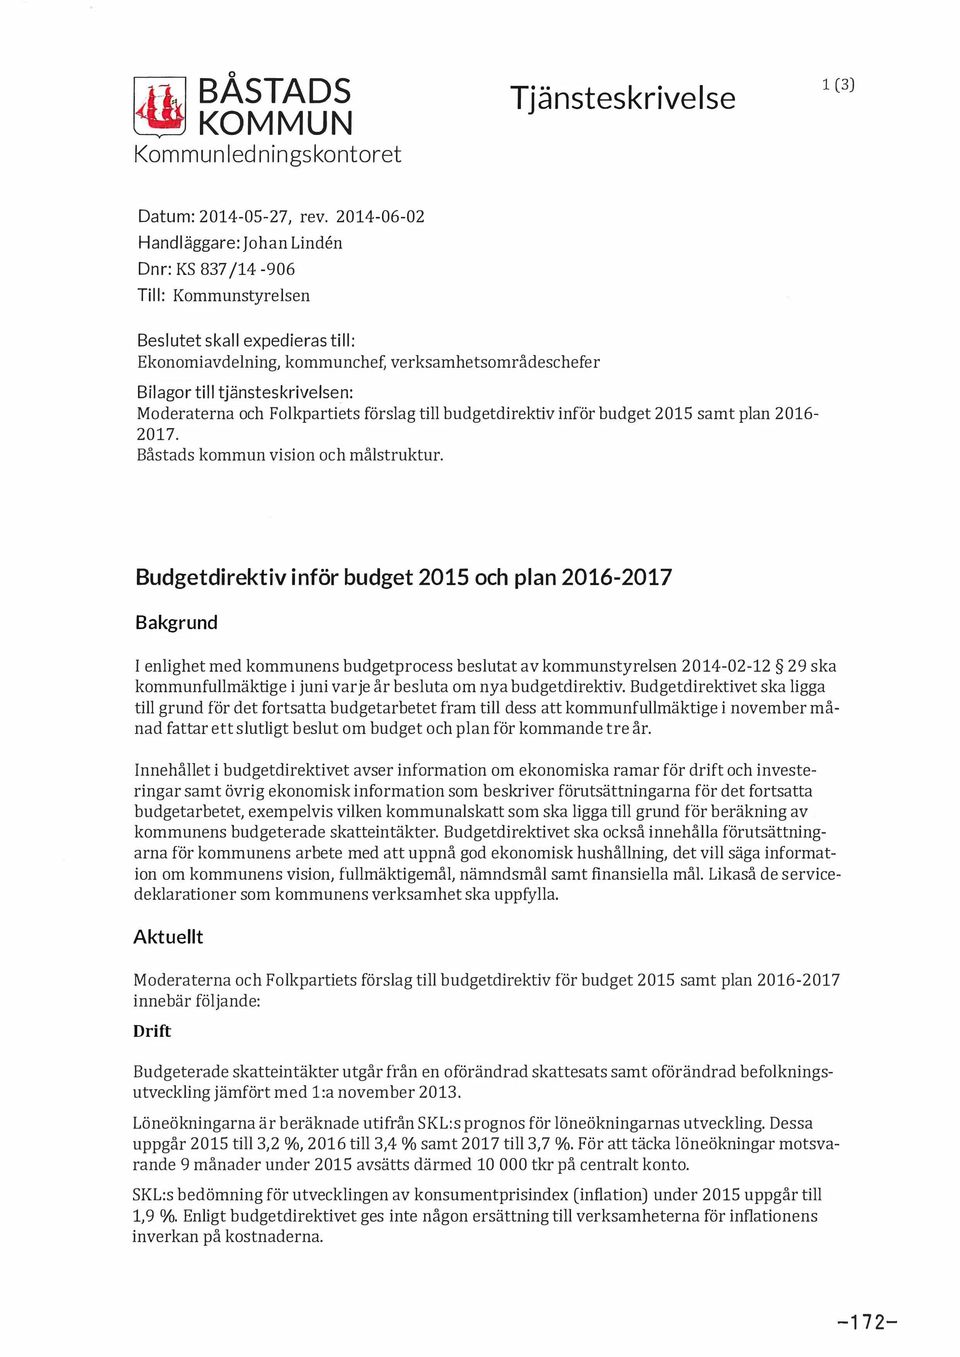 Moderaterna och Folkpartiets förslag till budgetdirektiv inför budget 2015 samt plan 2016-2017. Båstads kommun vision och målstruktur.